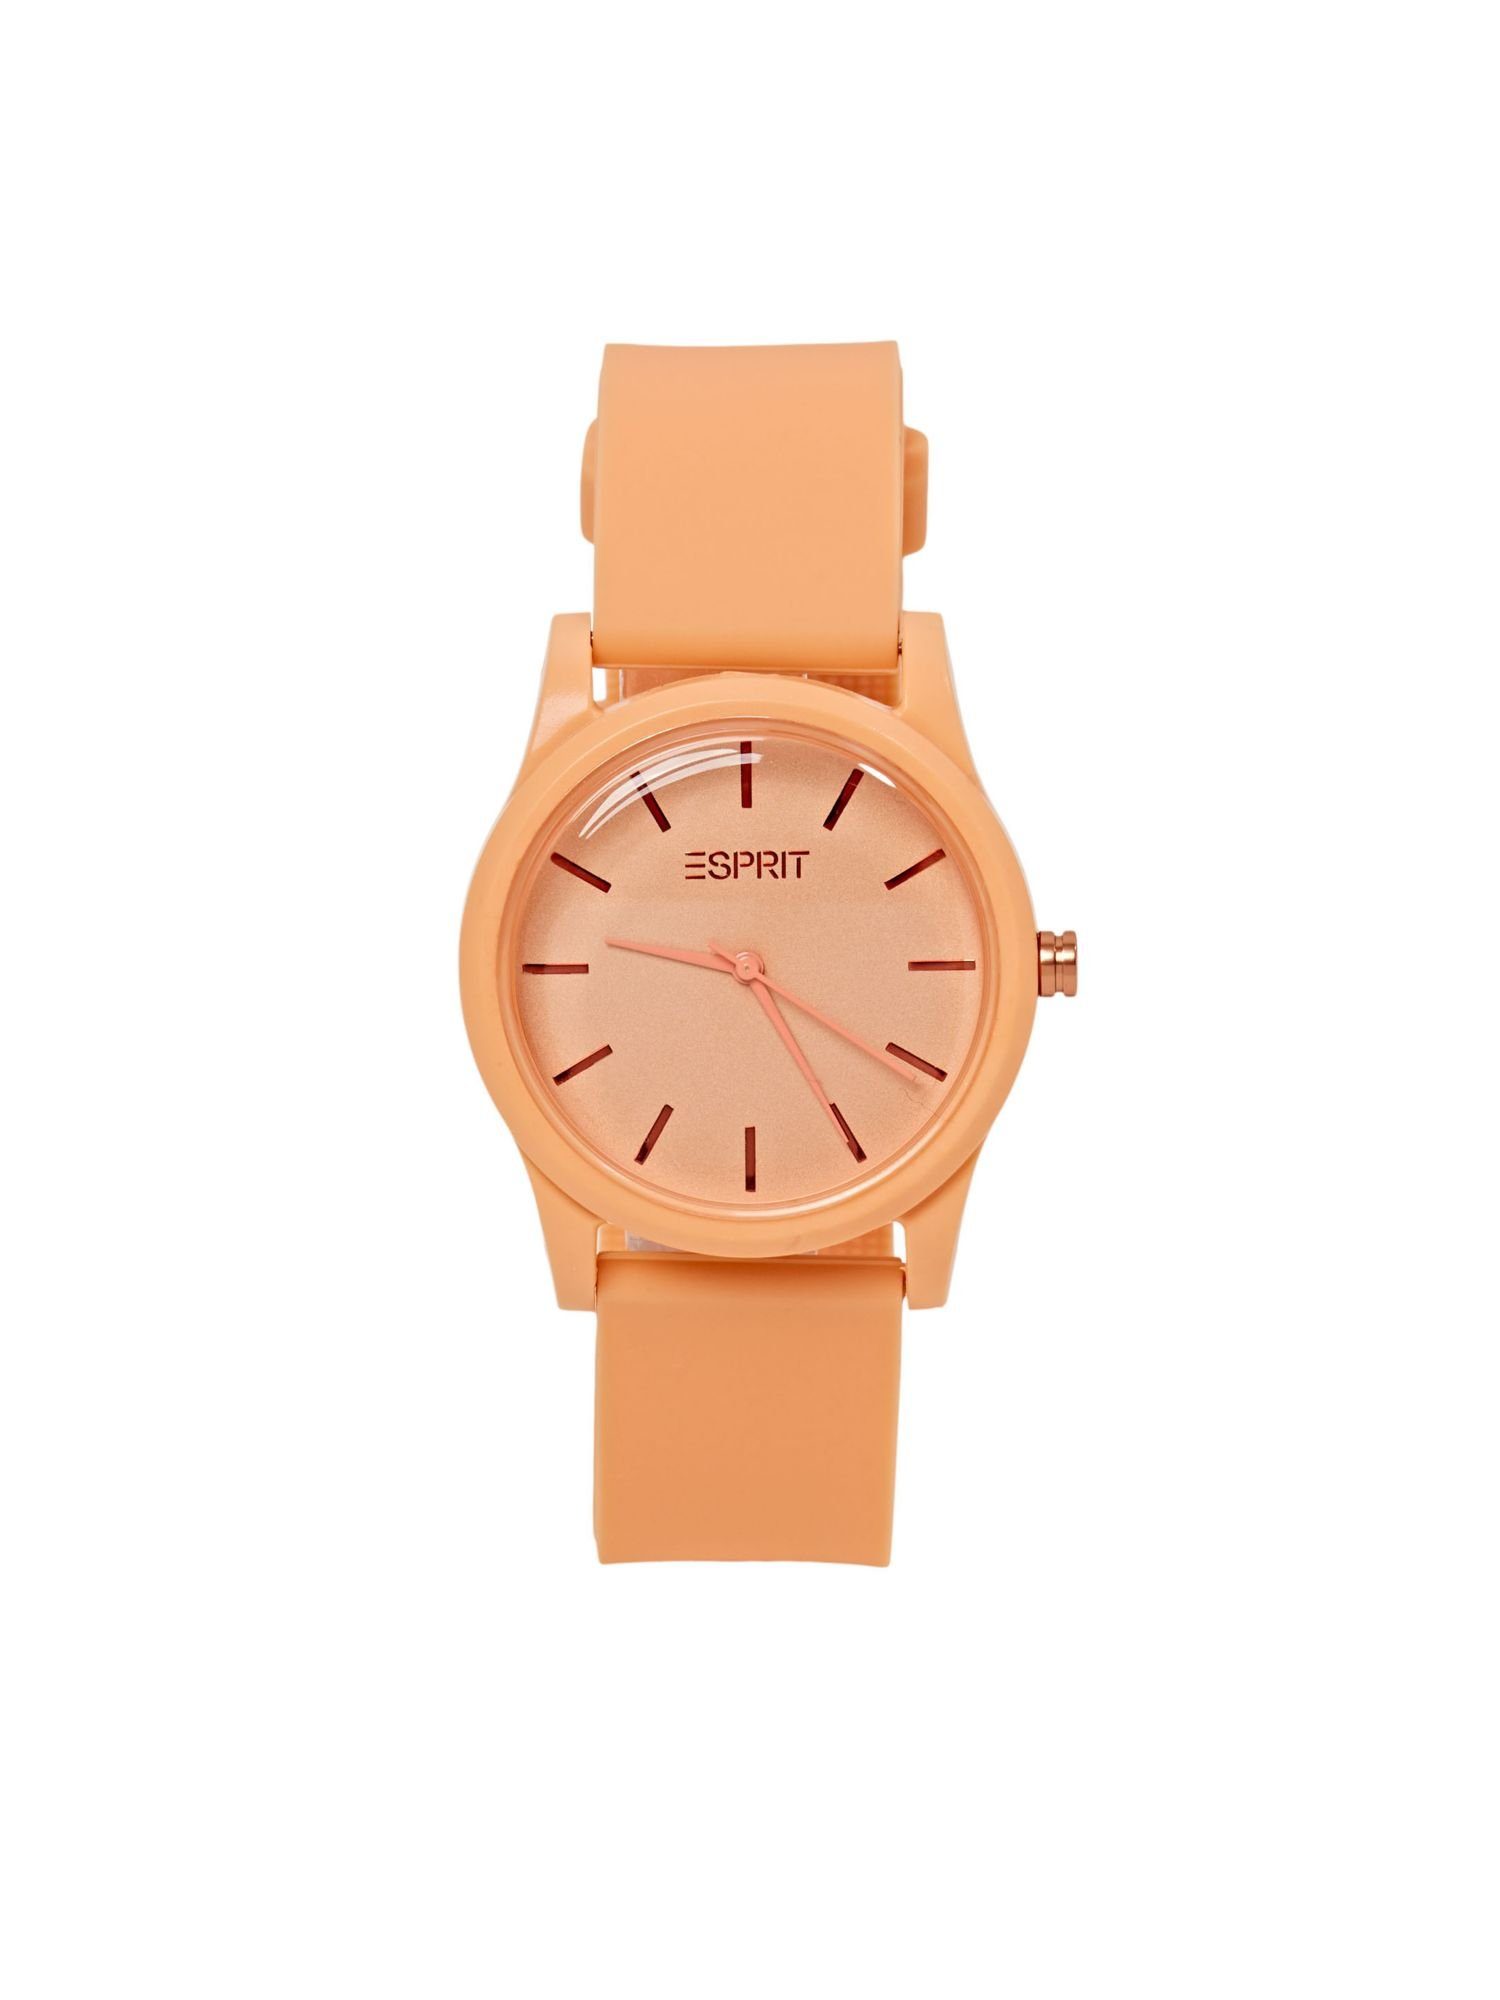 Gummiarmband Uhr mit Esprit orange Farbige Quarzuhr